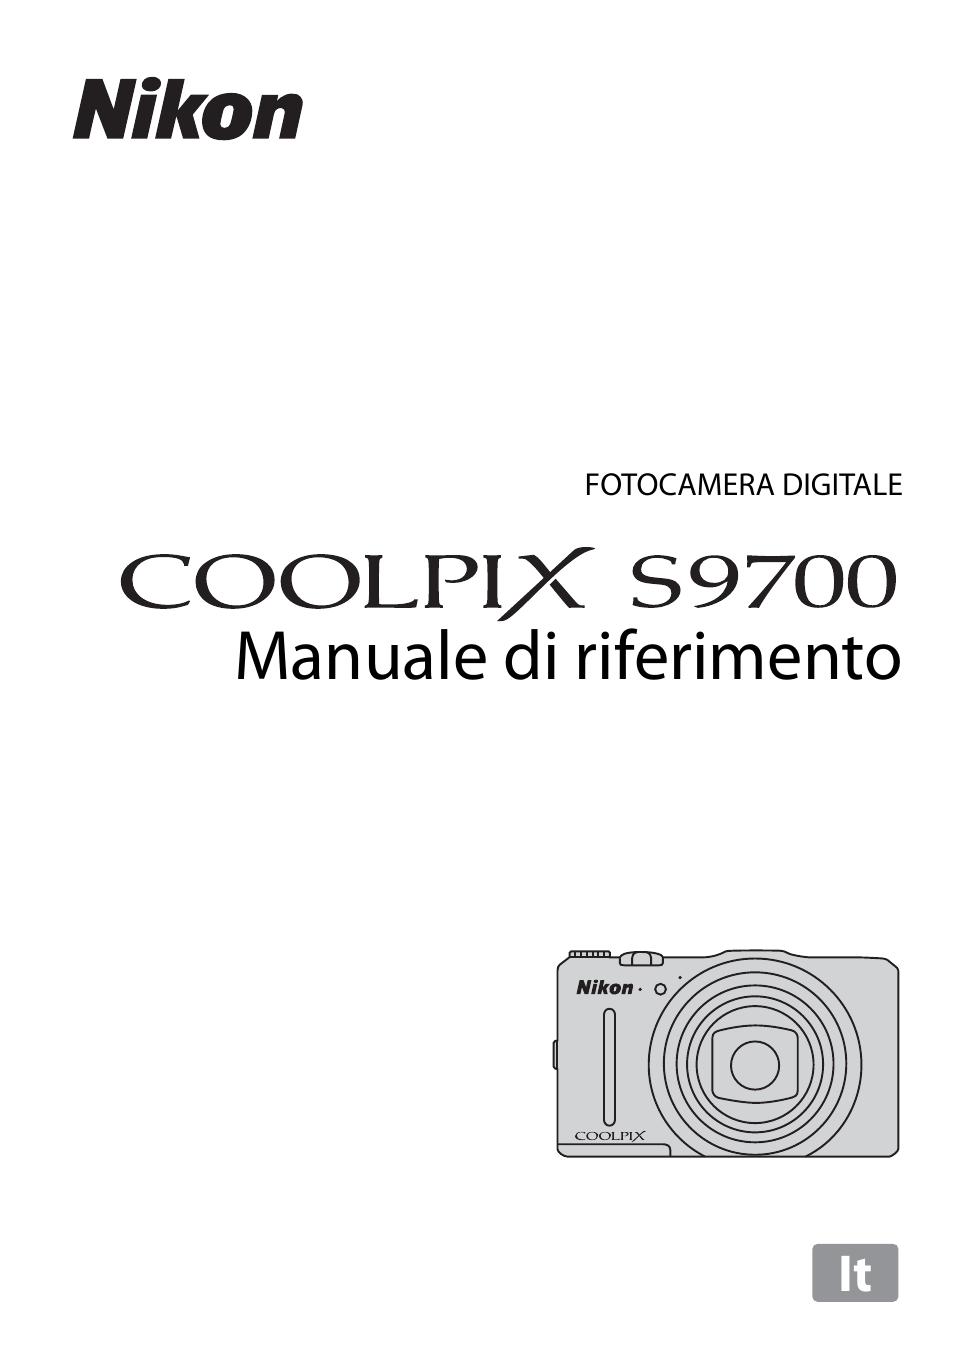 Nikon Coolpix S9700 fotocamera Stampato manuale di istruzioni guida utente 262 pagine A5 